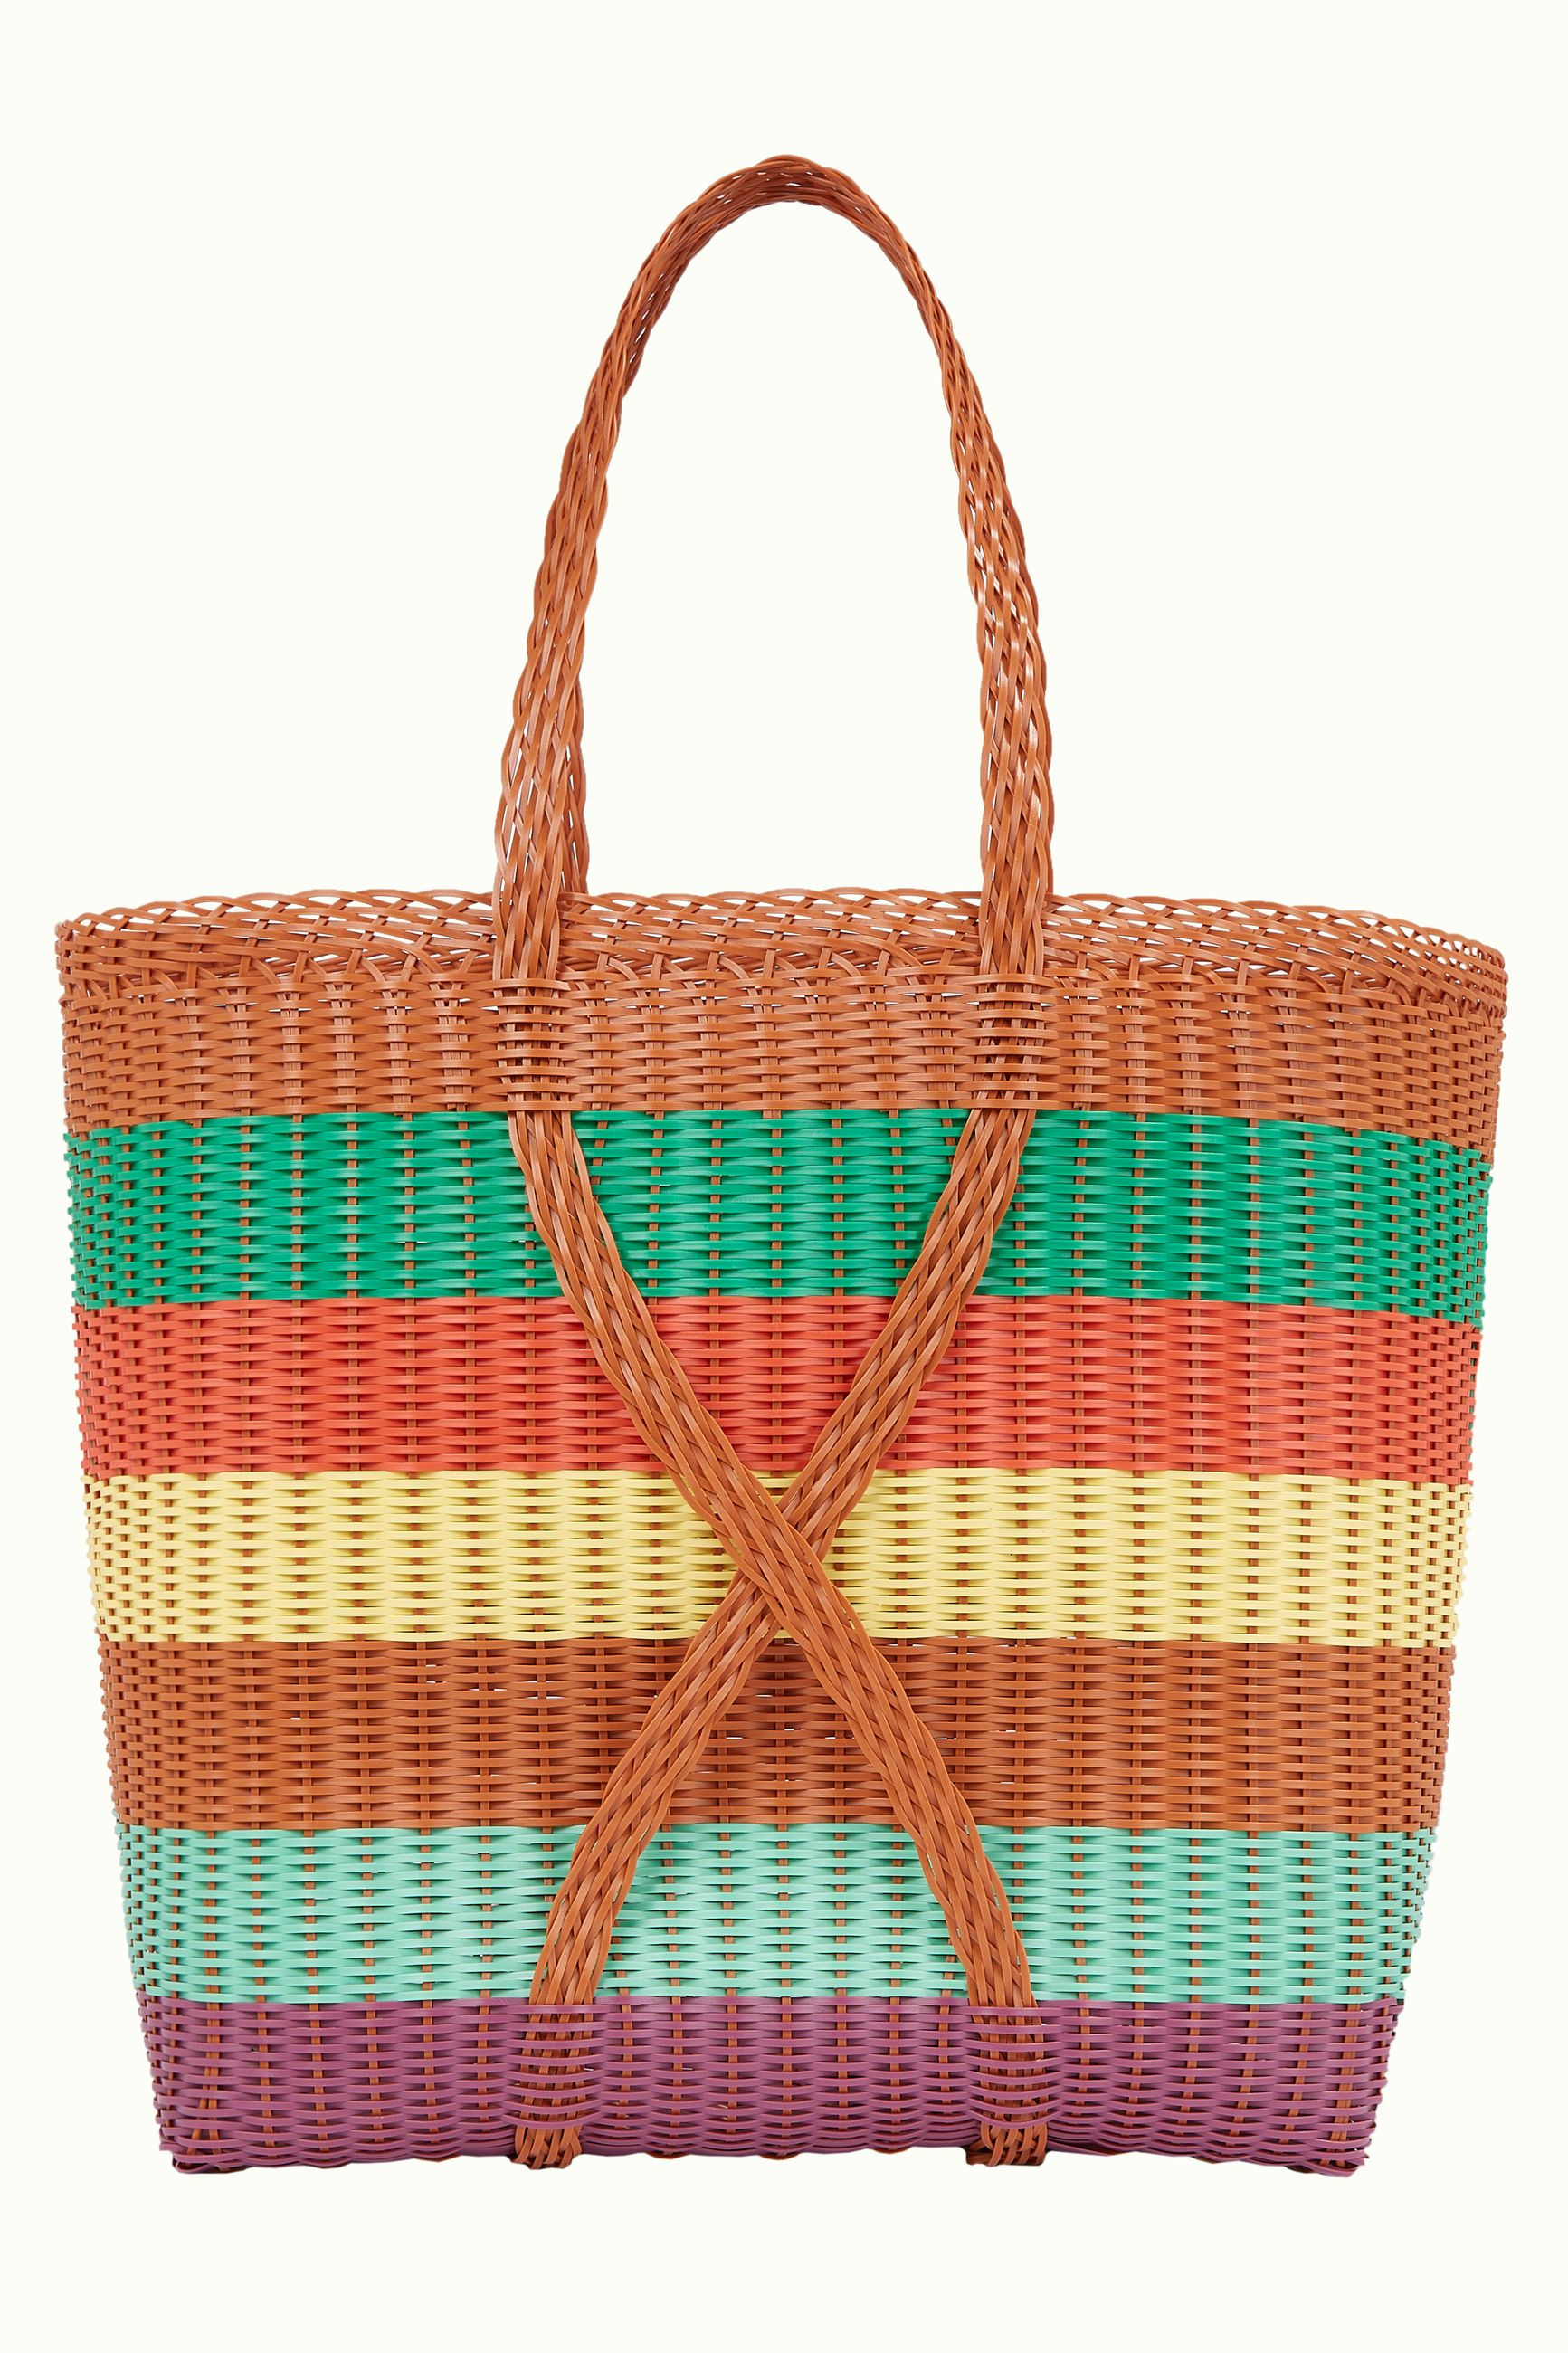 King Louie Shopper Shoppa Bag Puglia, Farbe: Caramel